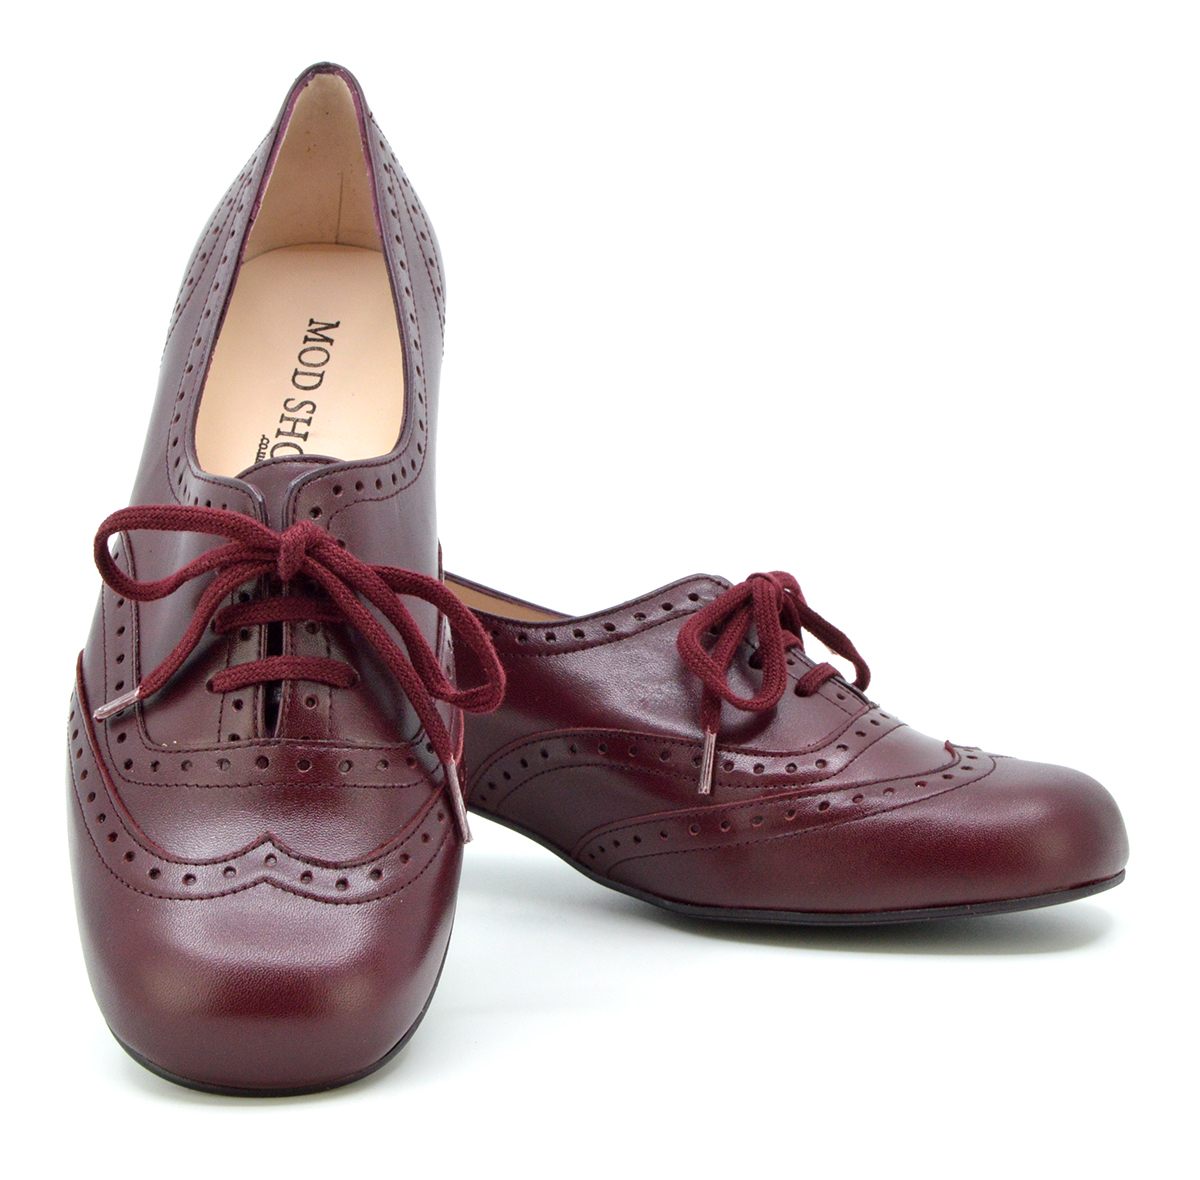 ladies vintage shoes uk